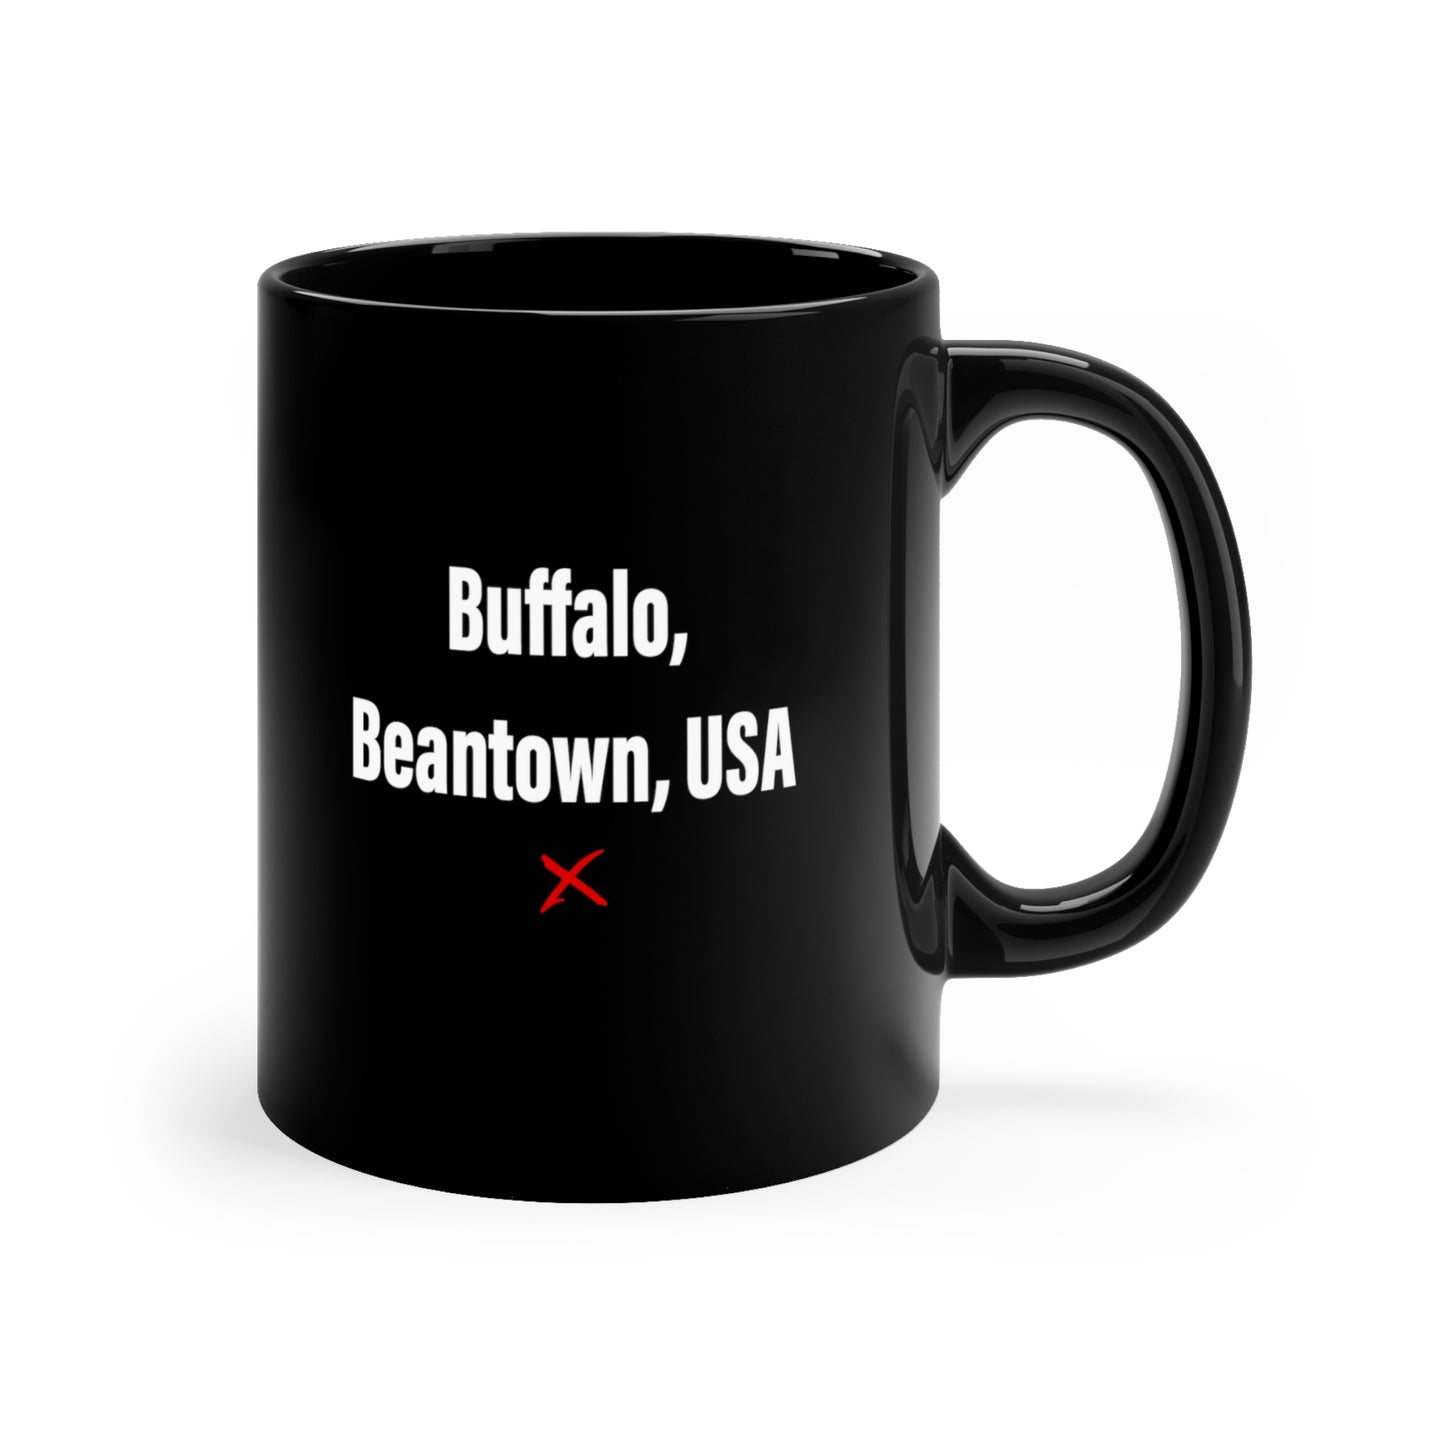 Buffalo, Beantown, USA - Mug